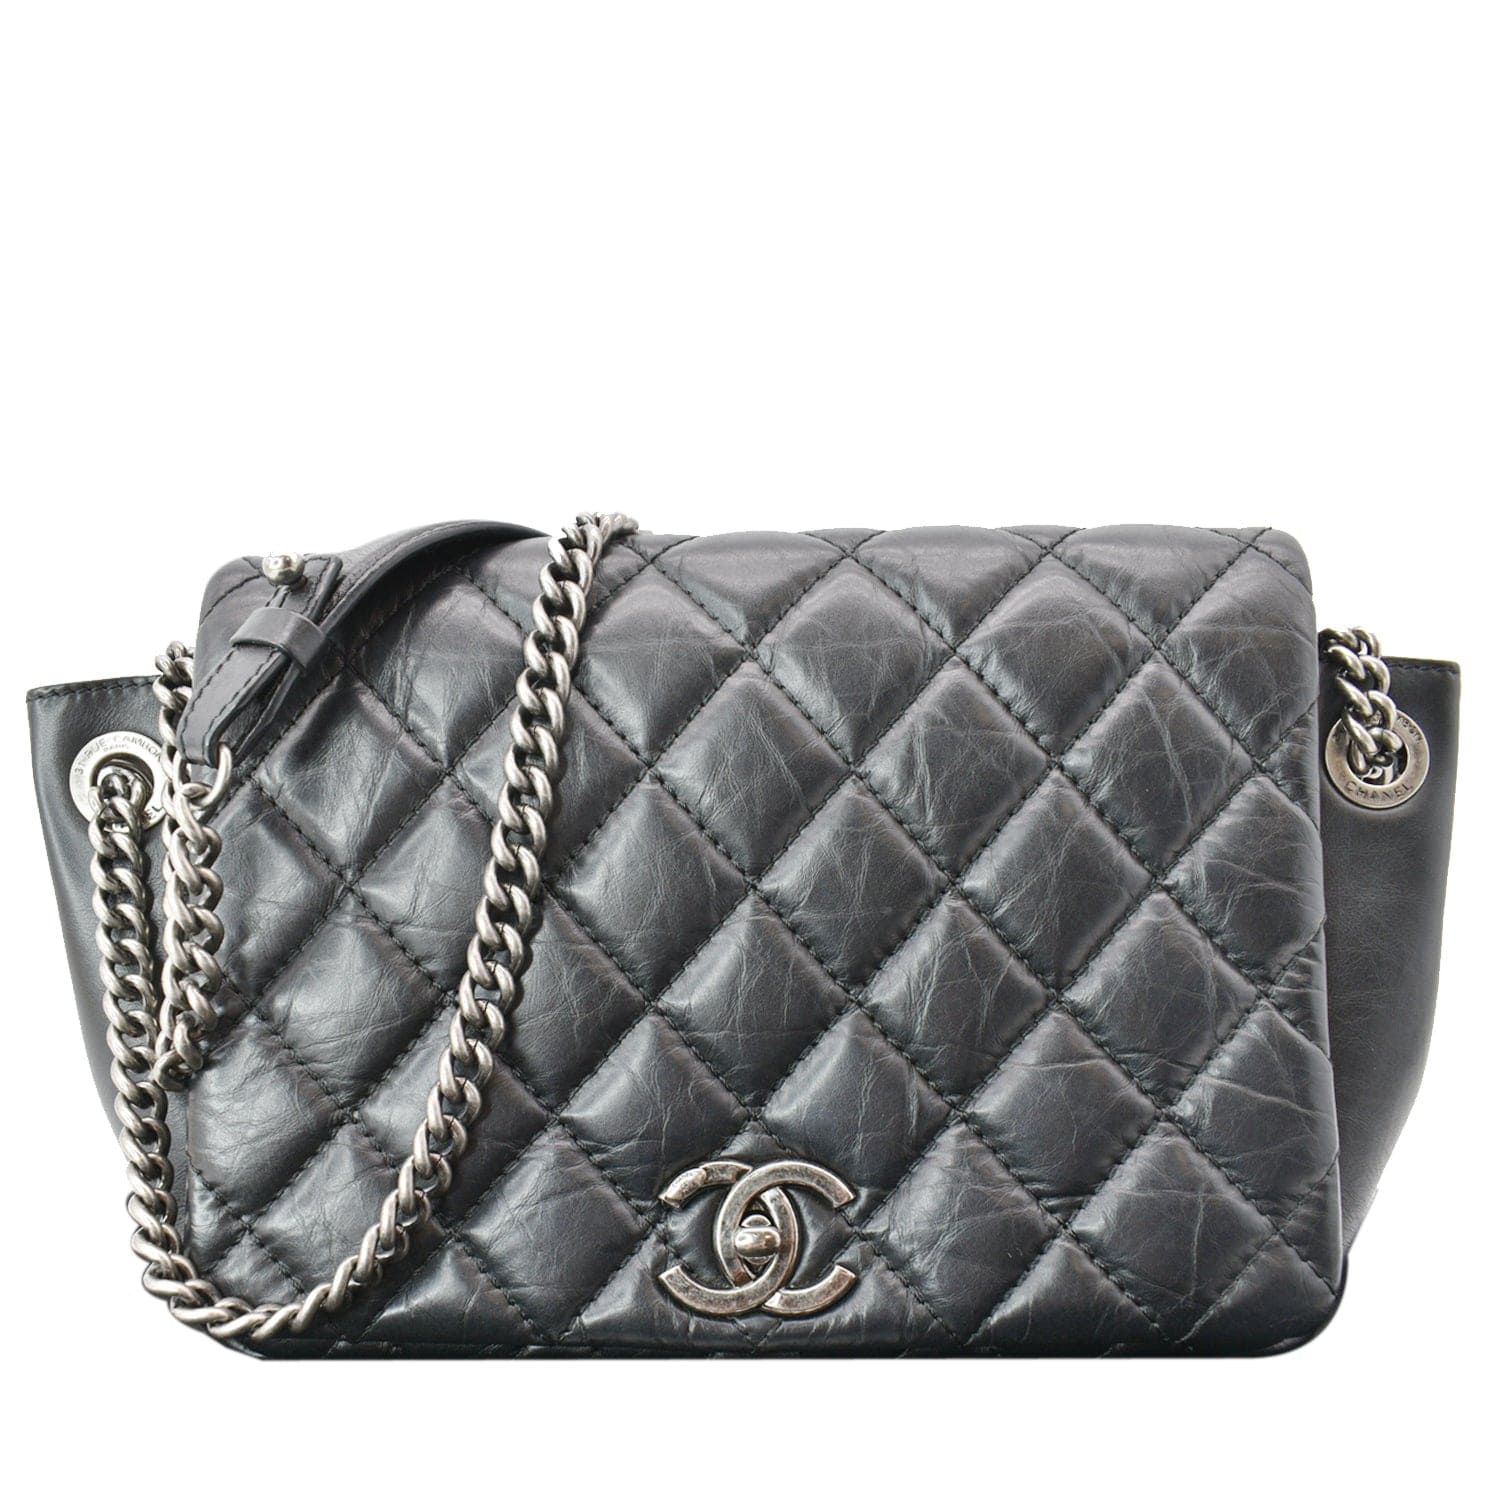 Chanel Black Classic Handbag - 827 For Sale on 1stDibs